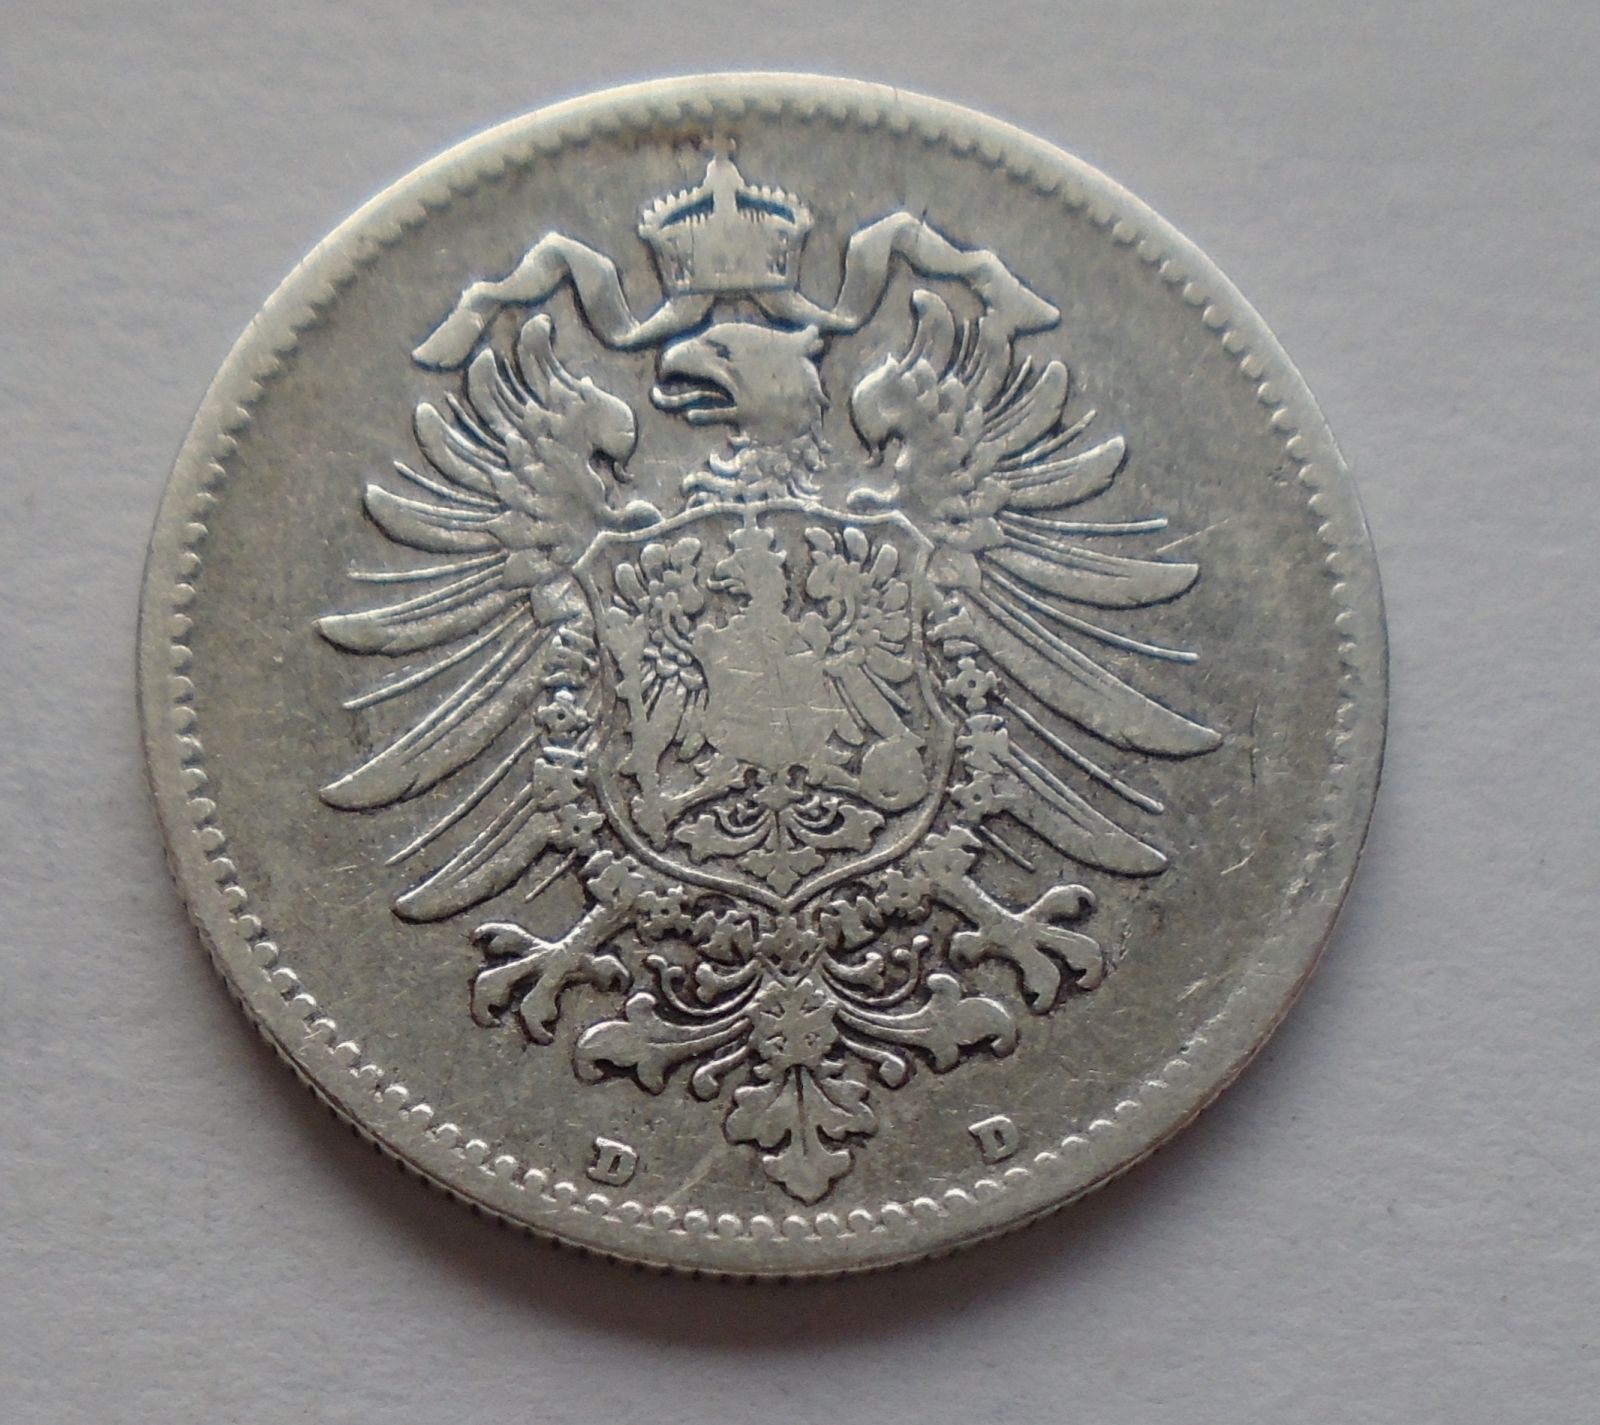 Německo 1 Marka 1886 D